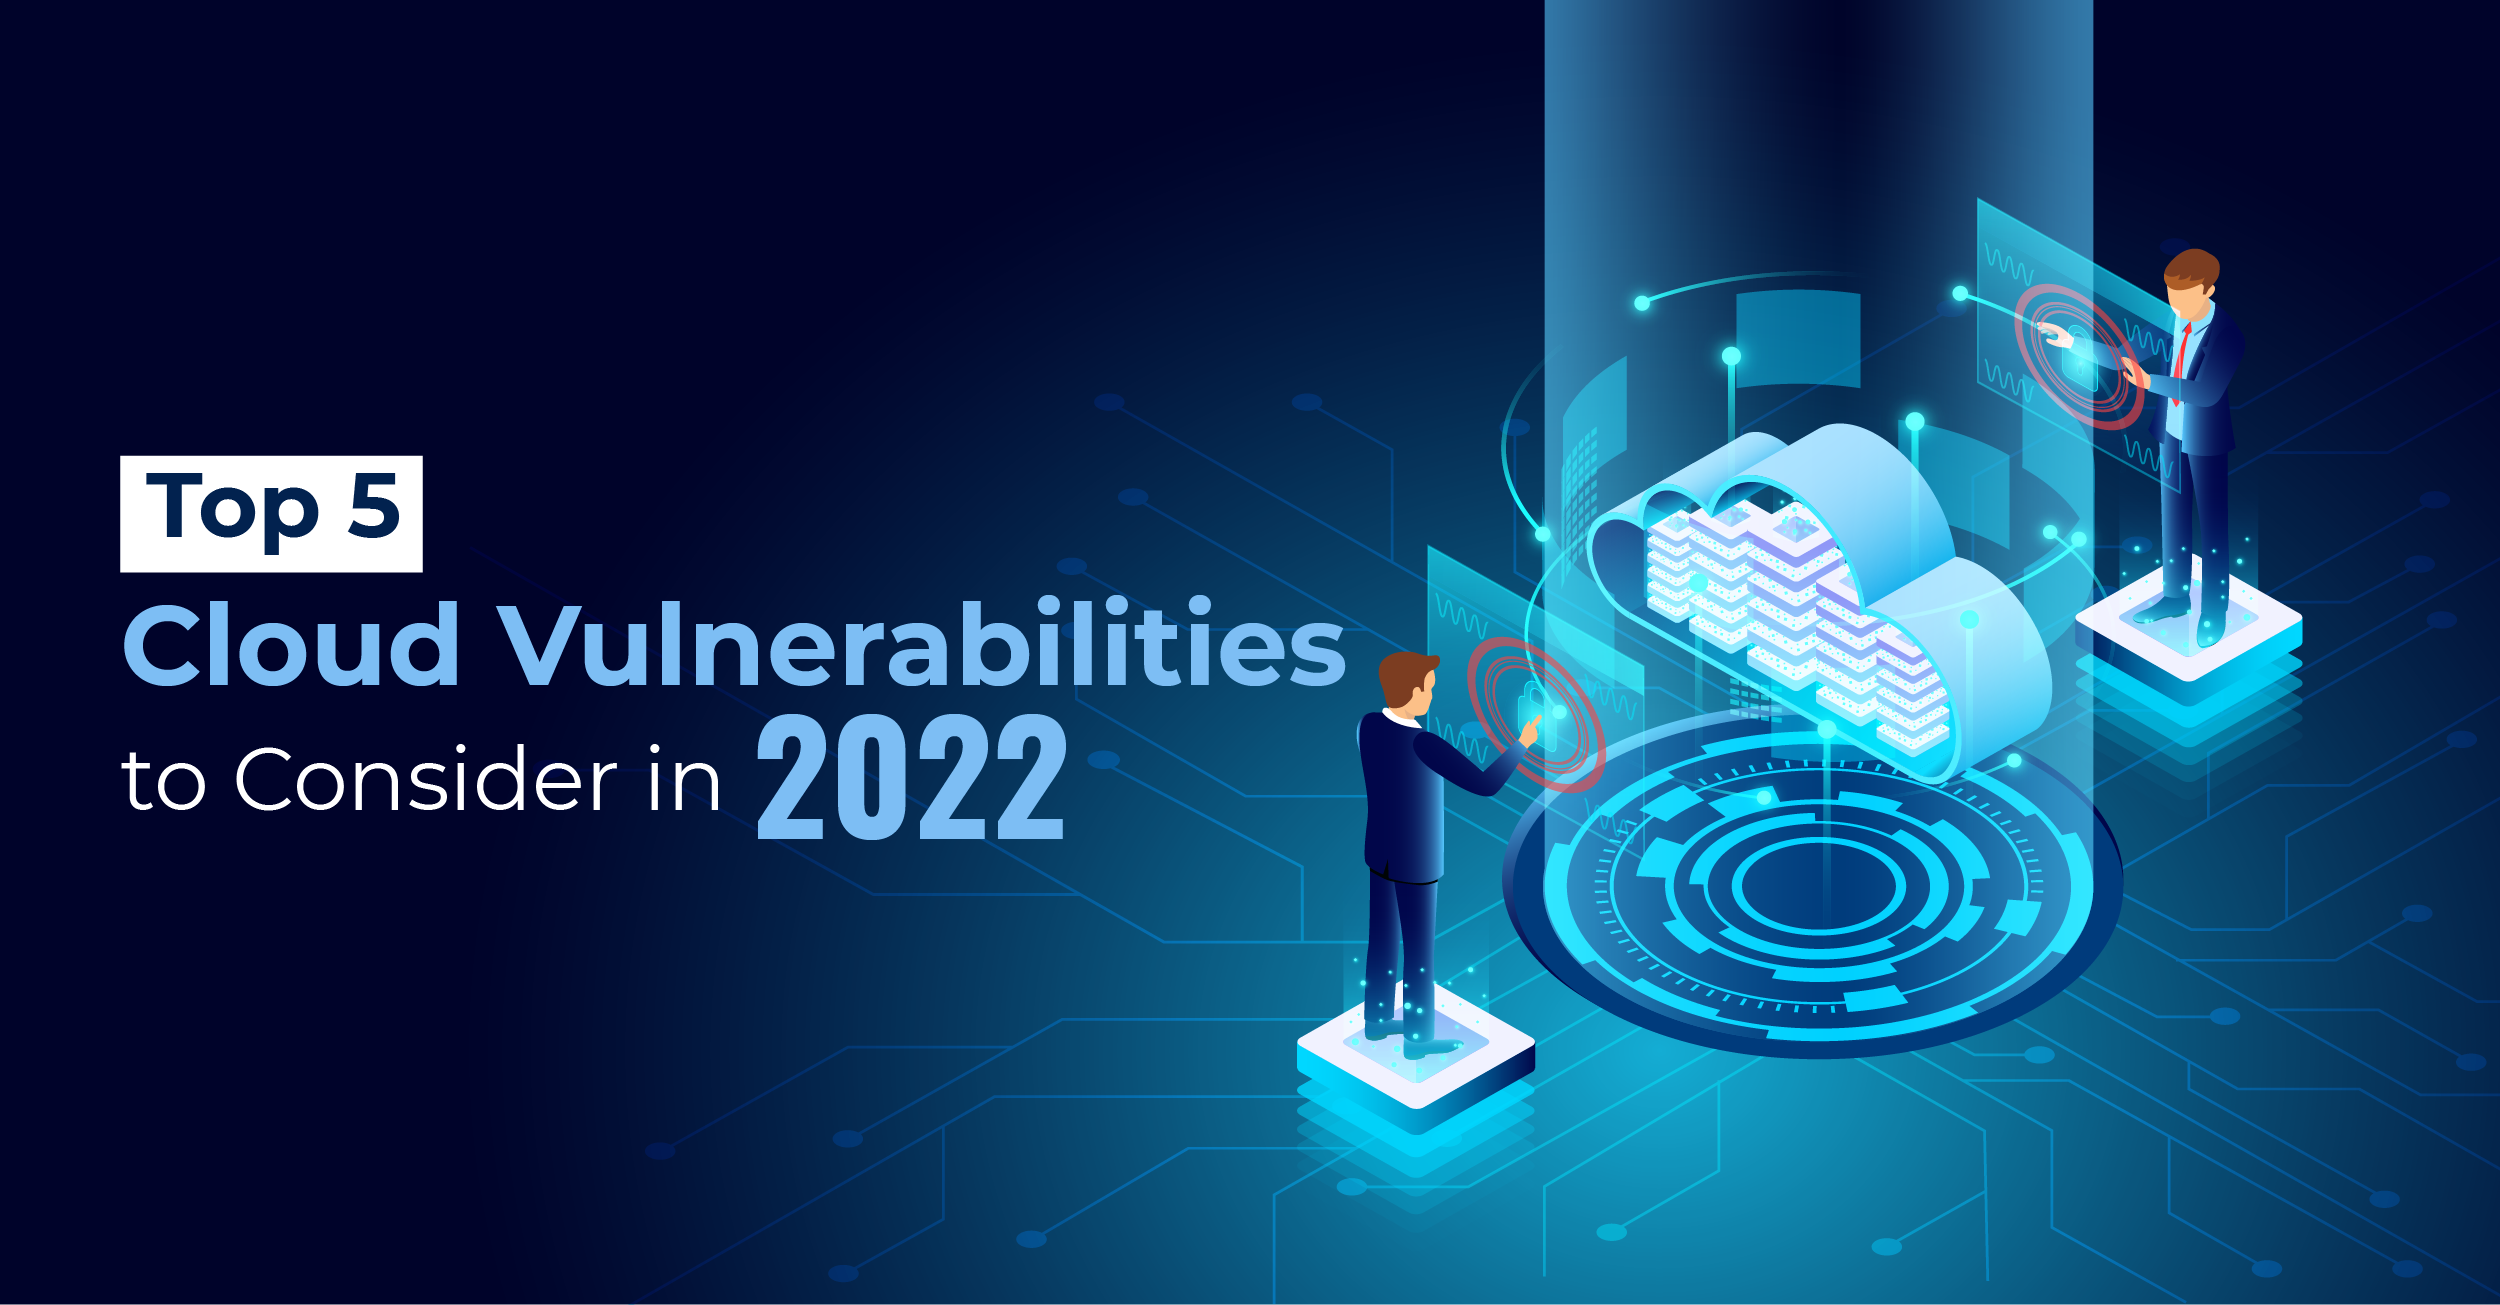 Top 5 Cloud Vulnerabilities to Consider in 2022